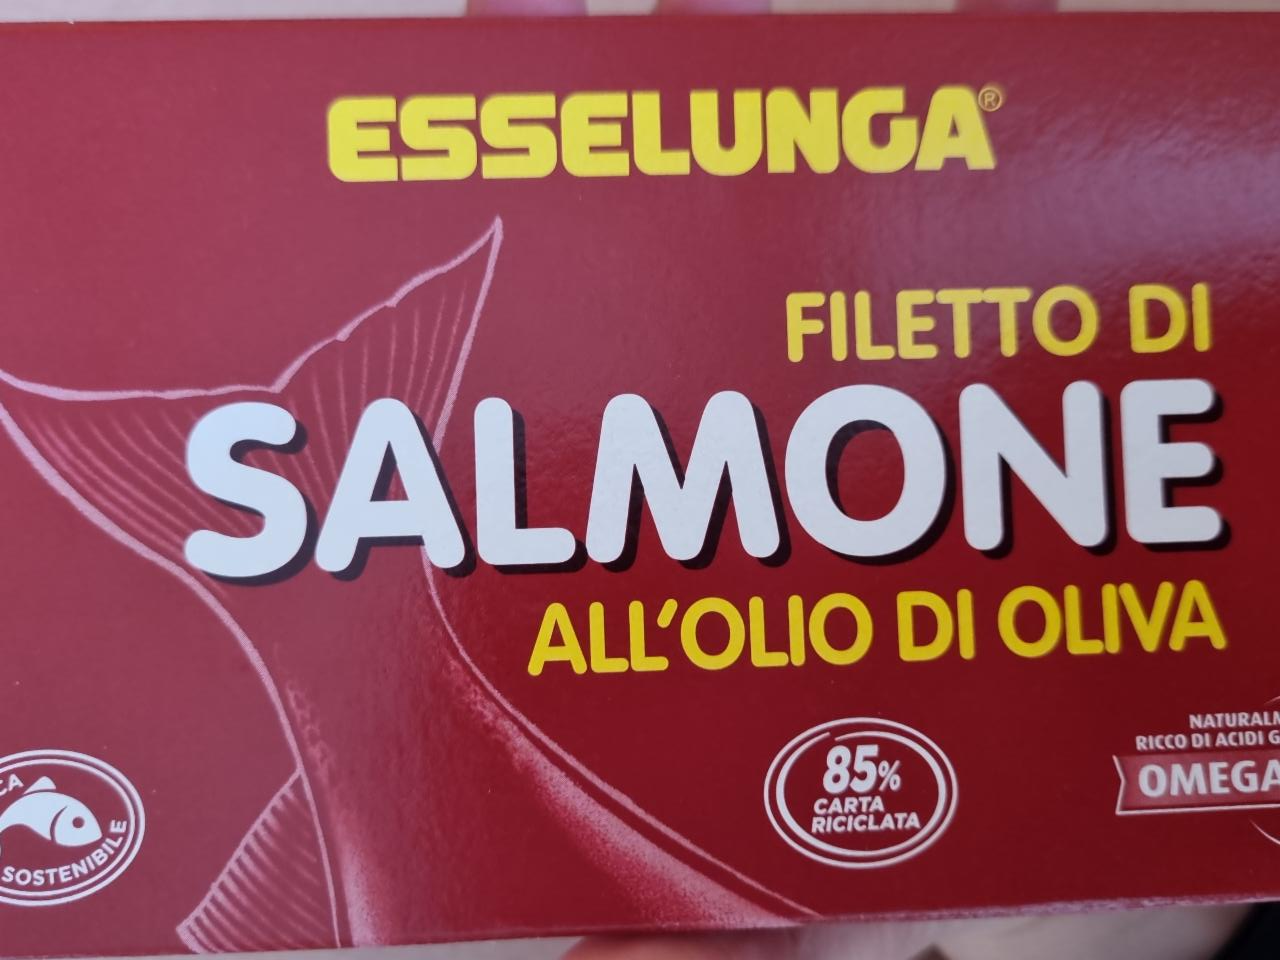 Фото - Лосось консервированый в оливковом масле Salmone Esselunga